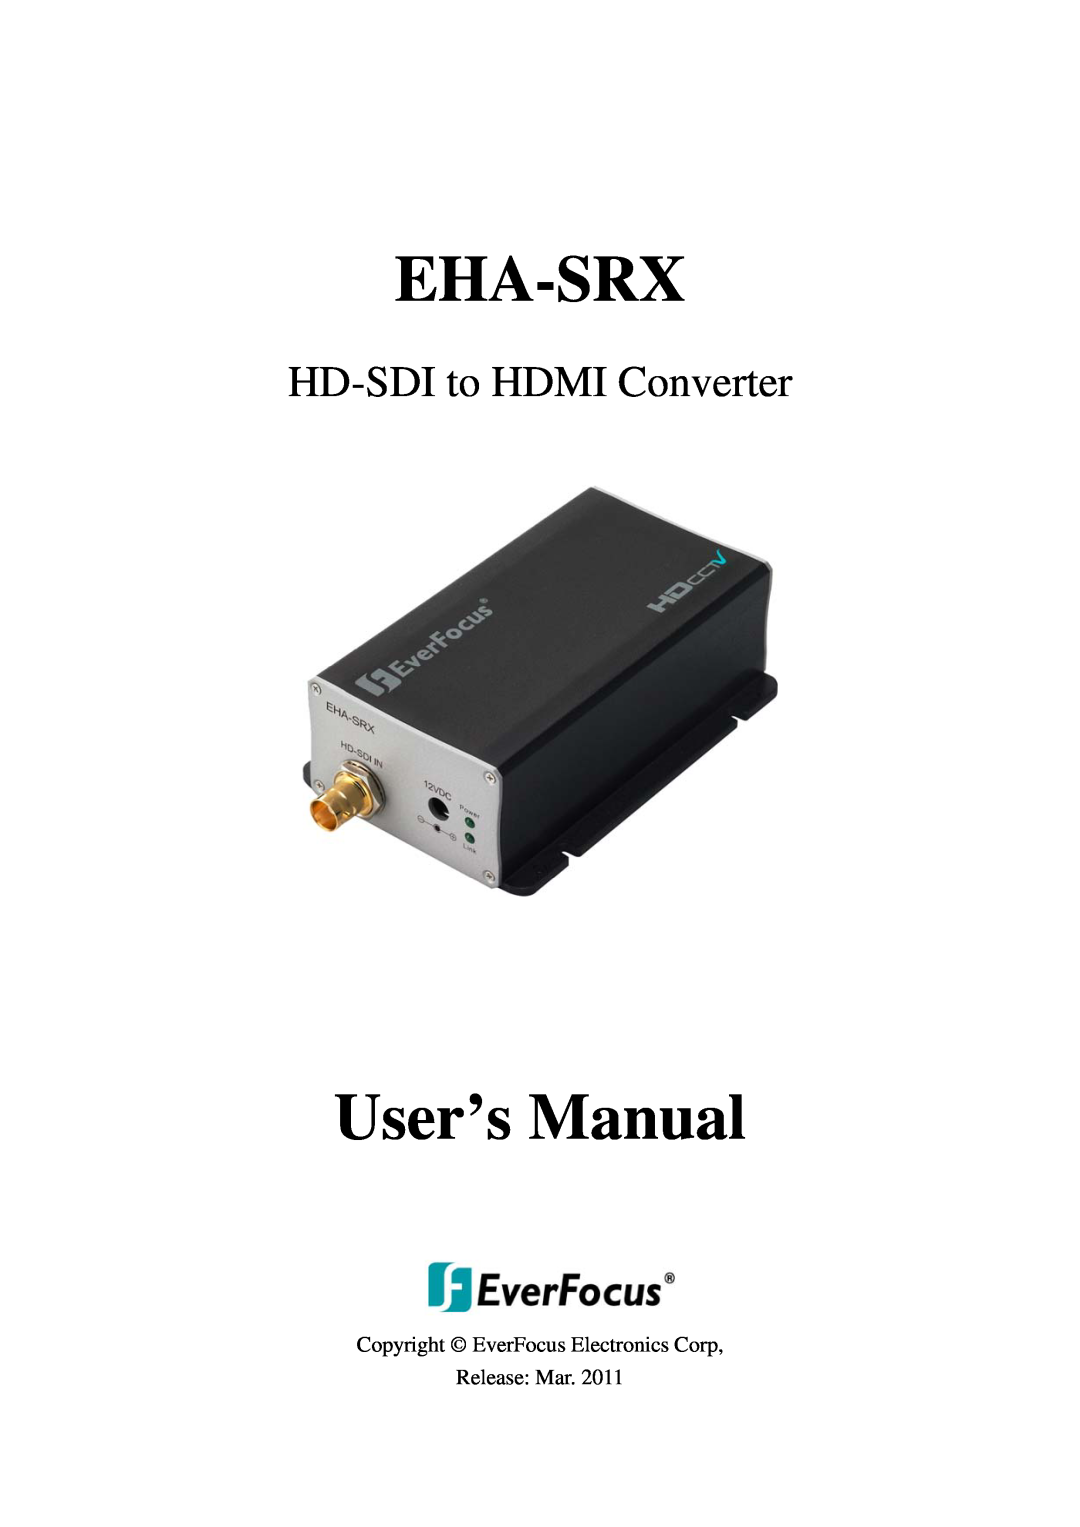 EverFocus EHA-SRX user manual Copyright EverFocus Electronics Corp Release Mar, Eha-Srx, User’s Manual 